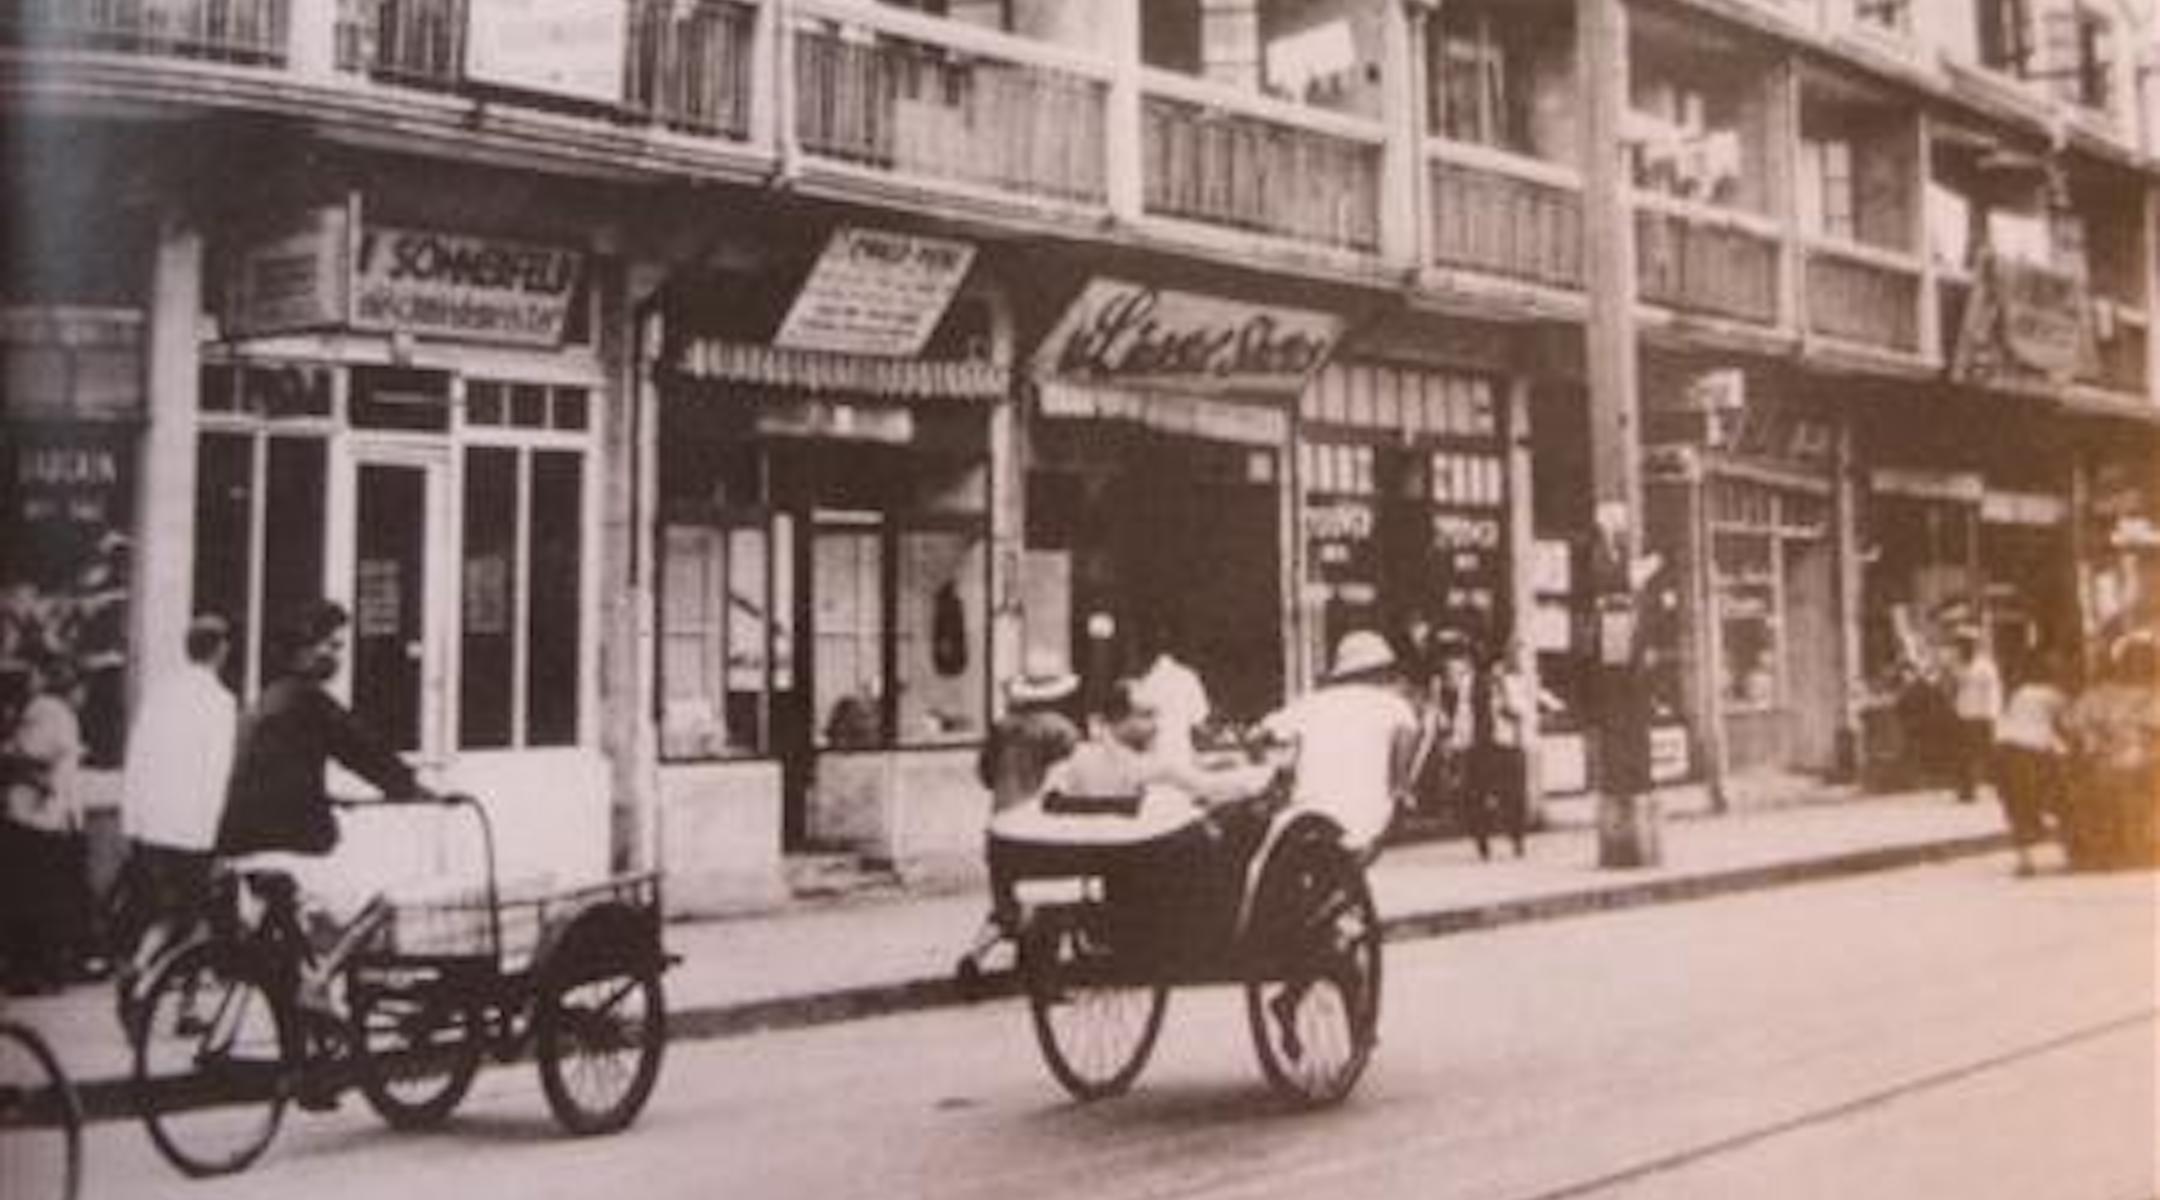 'Emigré', דרמה מוזיקלית על הקהילה היהודית של שנגחאי במהלך מלחמת העולם השנייה, מופיעה בבכורה בארה"ב